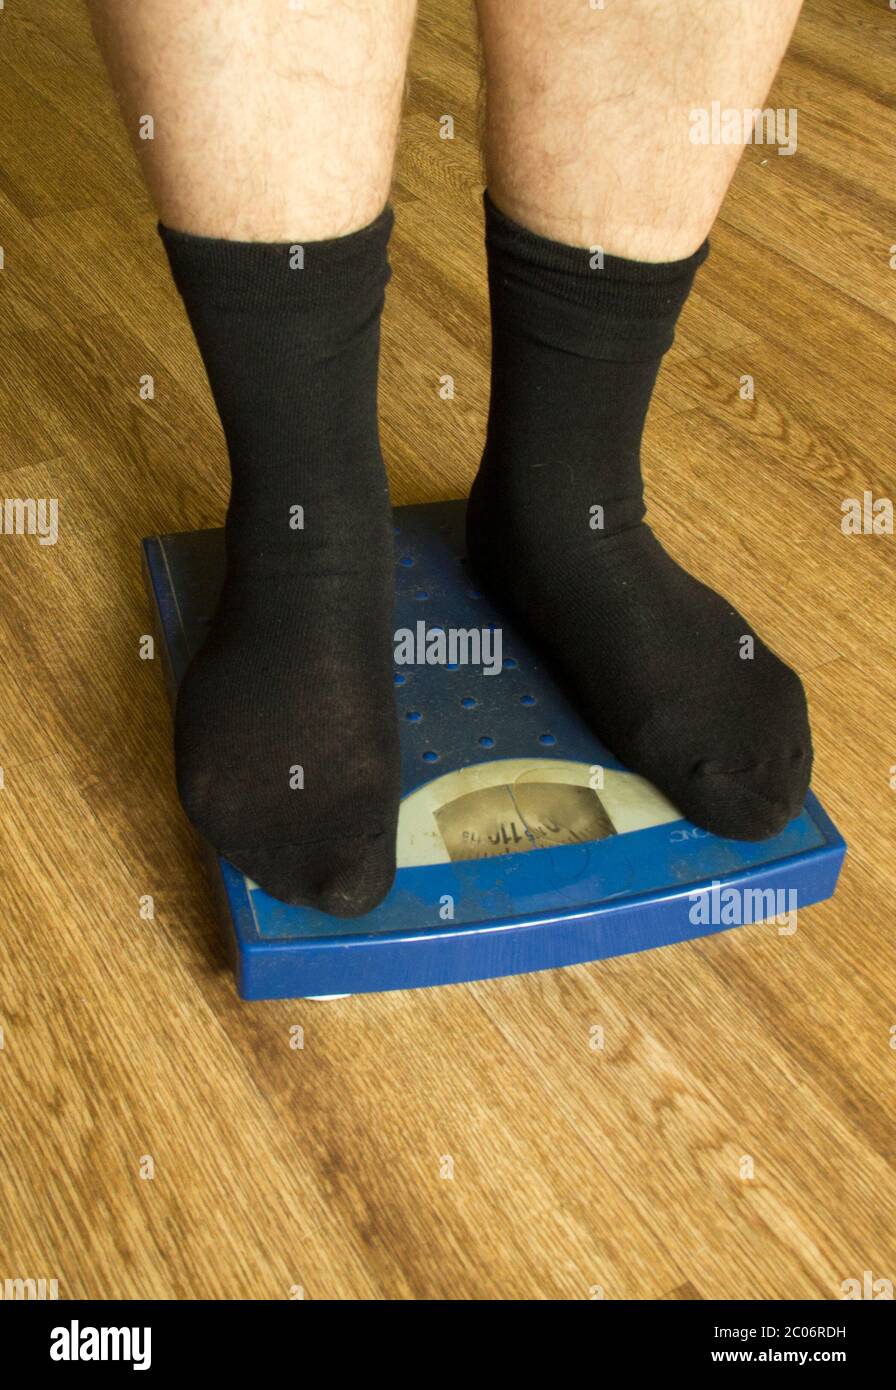 Piernas de hombre en calcetines negros se levantan en una balanza mecánica  de color azul (vista frontal Fotografía de stock - Alamy